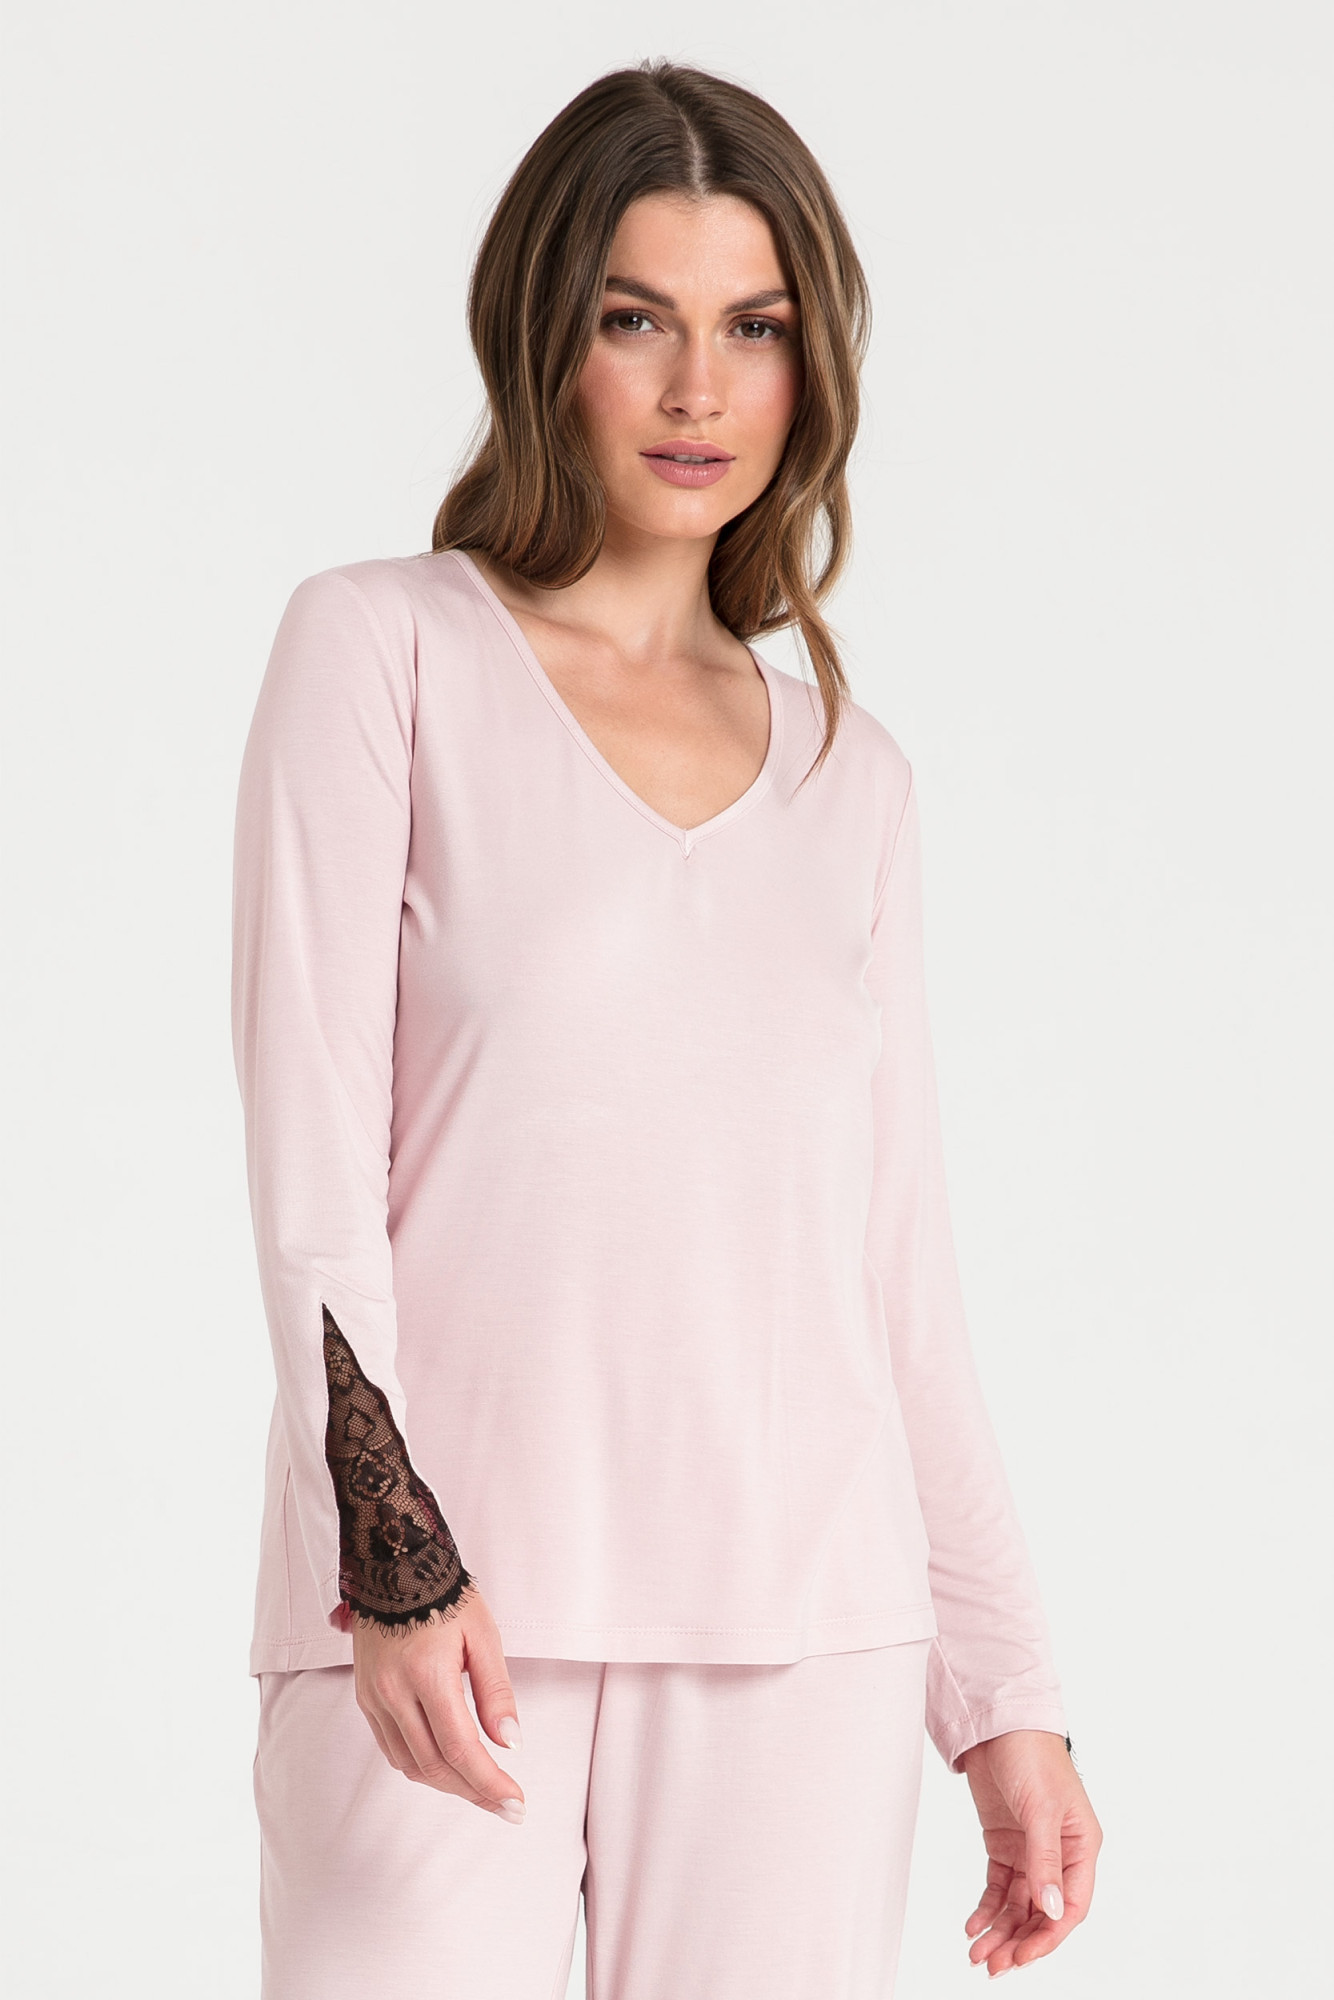 Dámský pyžamový Top LA072 Pudr růžová - LaLupa pudrovo-růžová XL